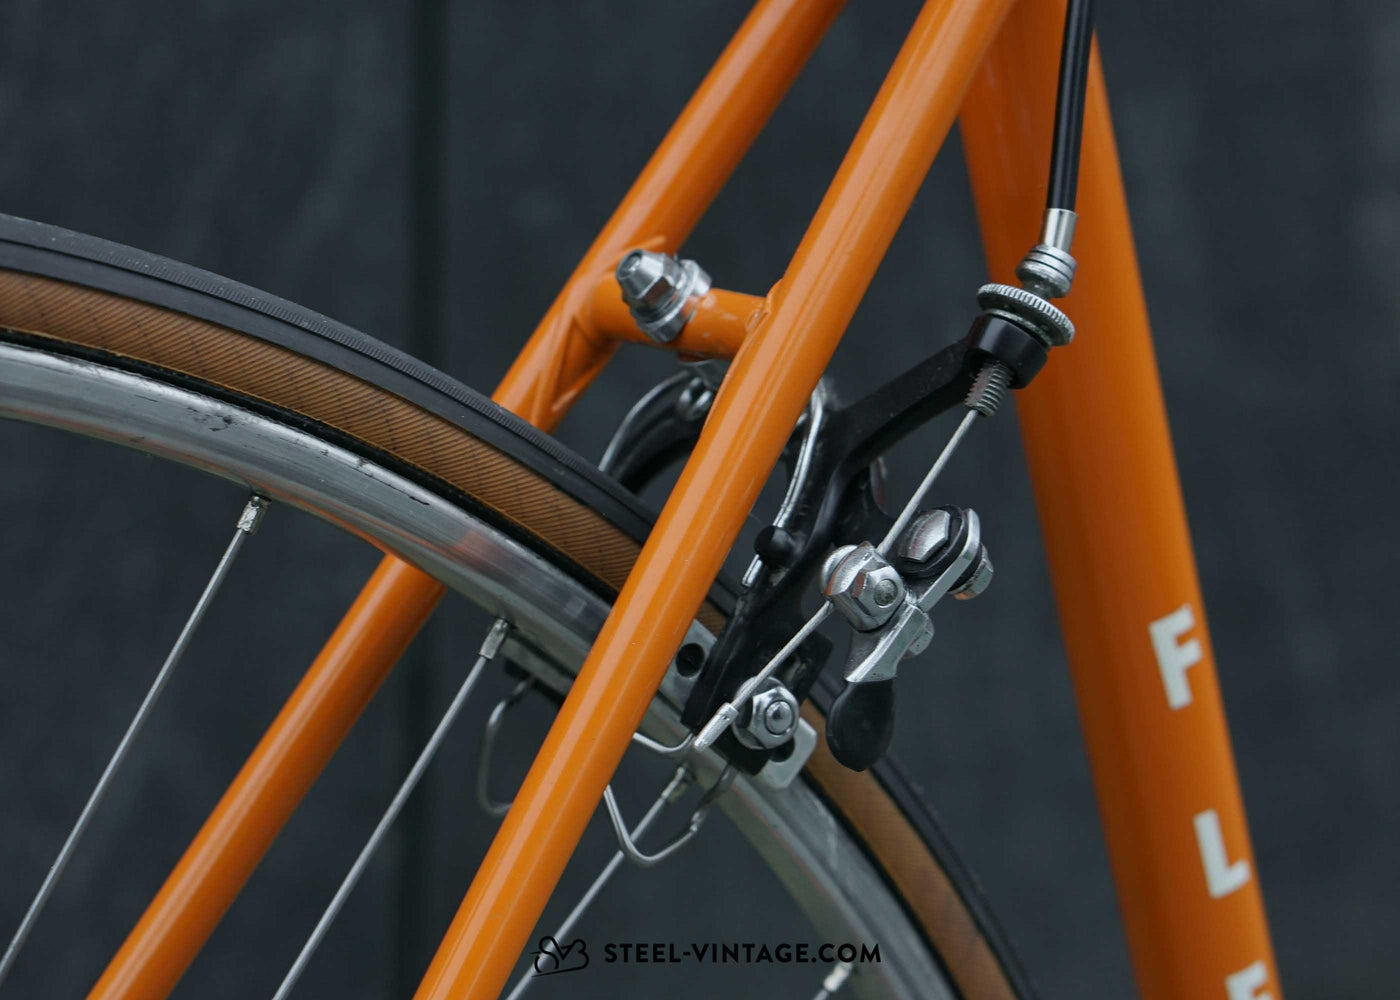 Flema Super Vintage Road Bicycle 1970s | Steel Vintage Bikes